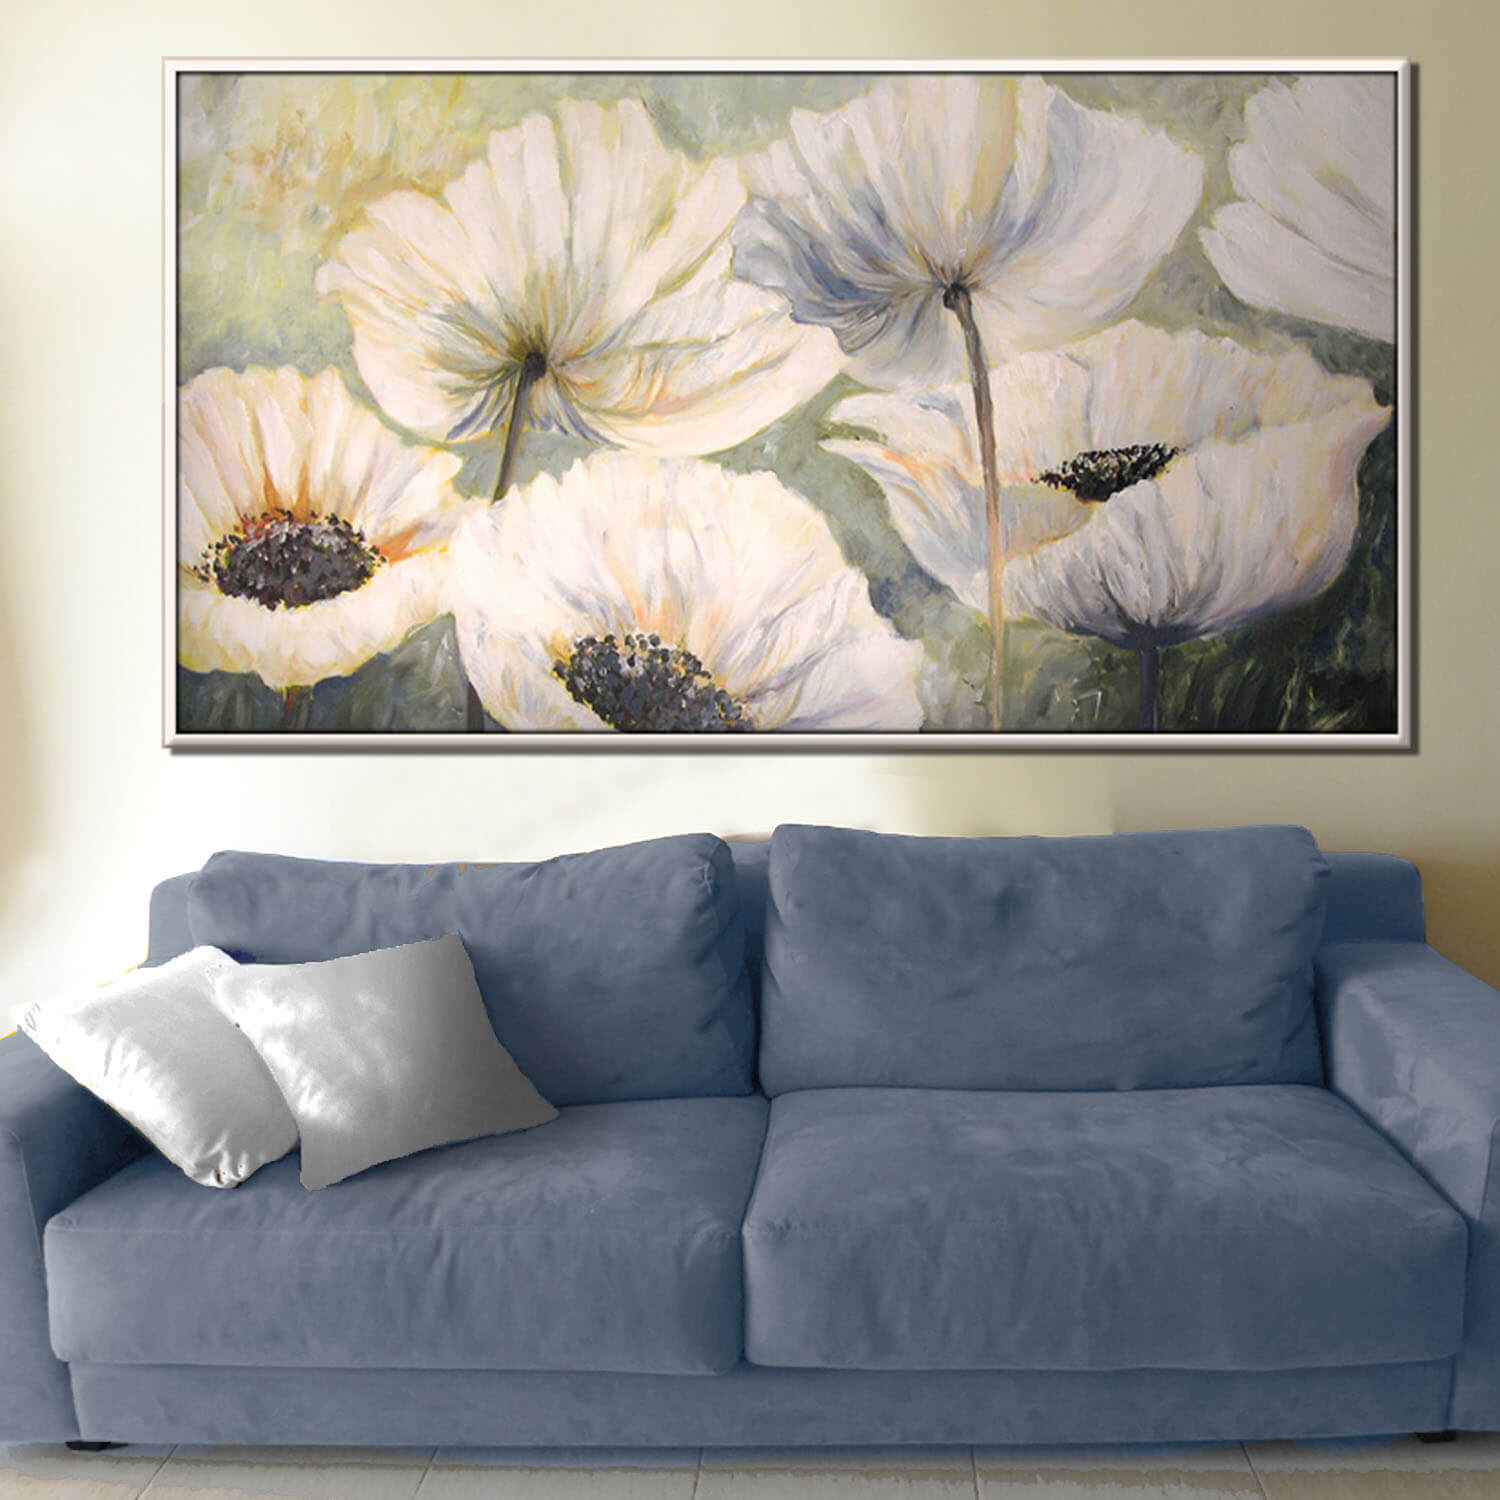 ציור אופקי של כלניות לבנות תמונת פרחים לבנים מעל ספה בהירה בסלון ציירת מירי לביא